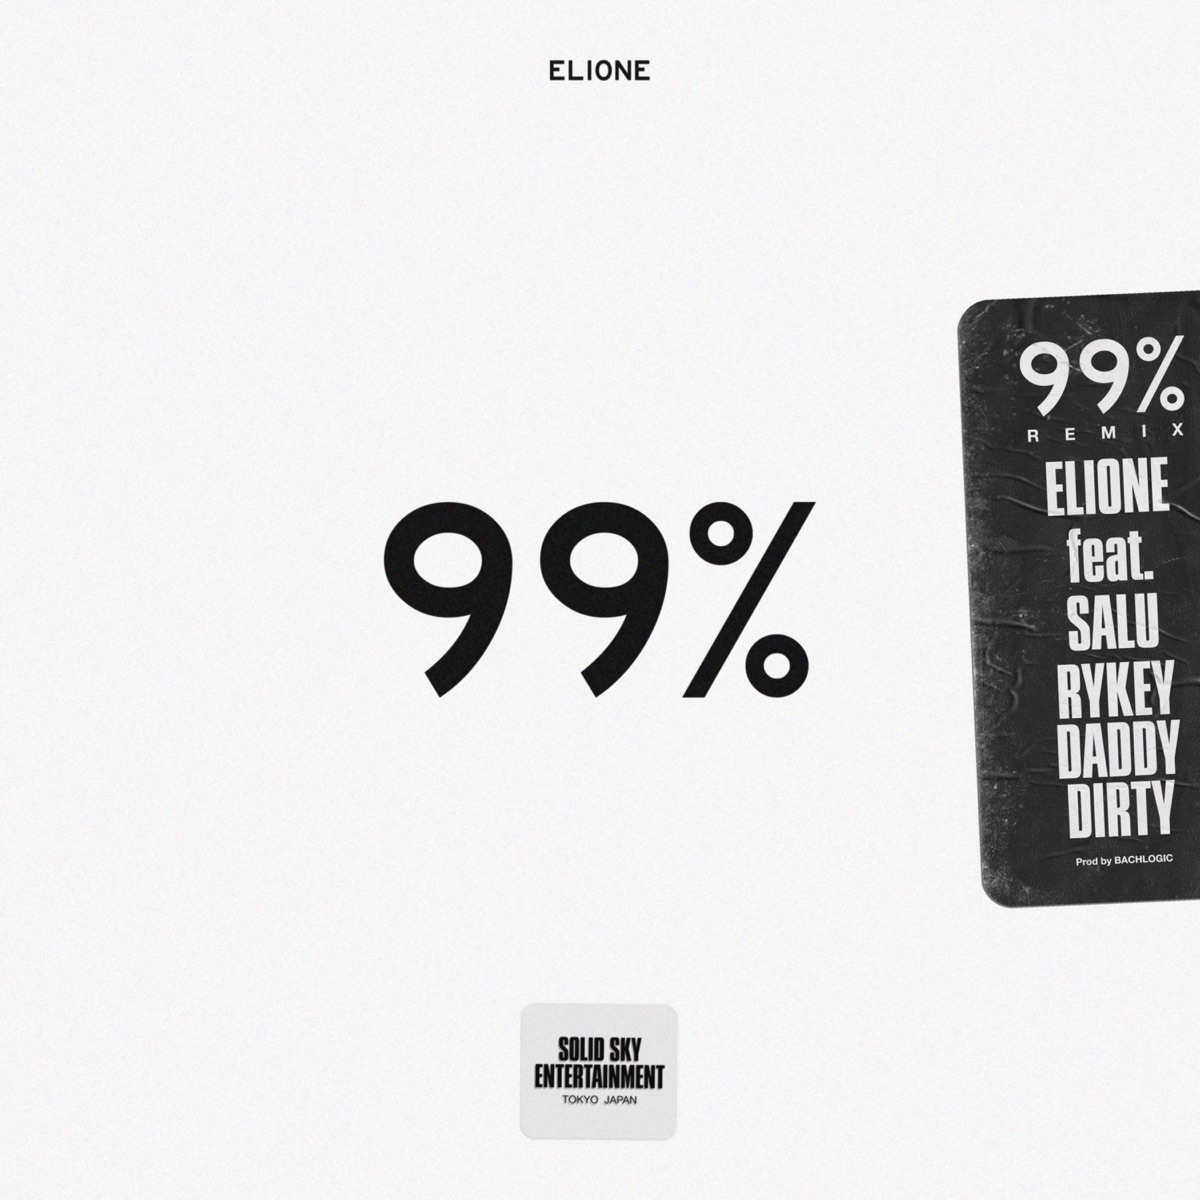 『ELIONE - 99% (feat. SALU & RYKEYDADDYDIRTY) [Remix] 歌詞』収録の『99% (feat. SALU & RYKEYDADDYDIRTY) [Remix]』ジャケット